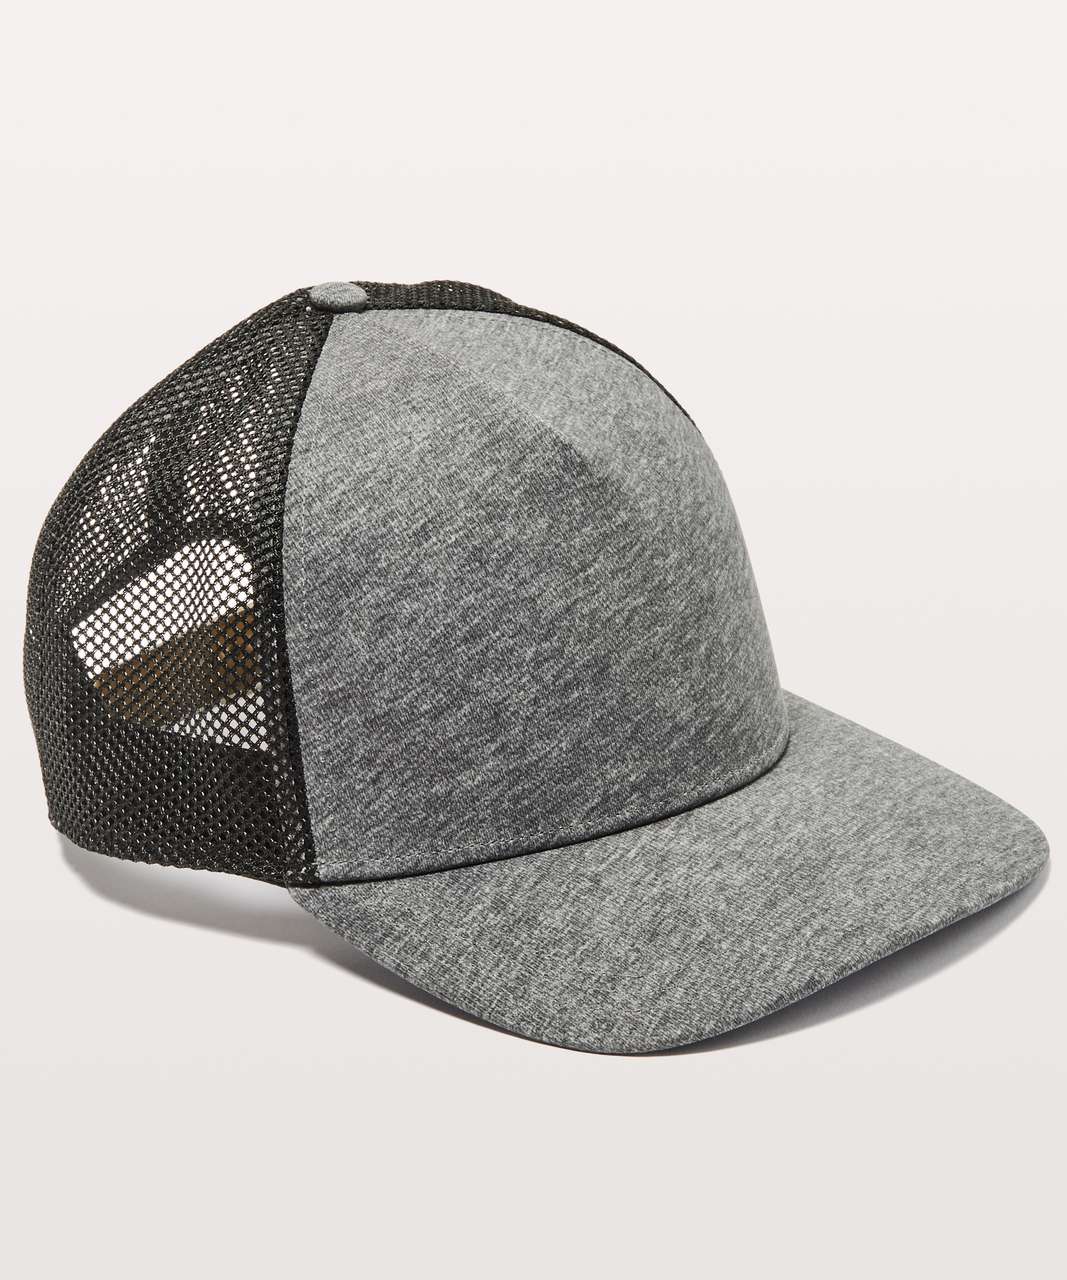 Lululemon Commission Hat - Heathered Texture Printed Greyt Deep Coal / Black